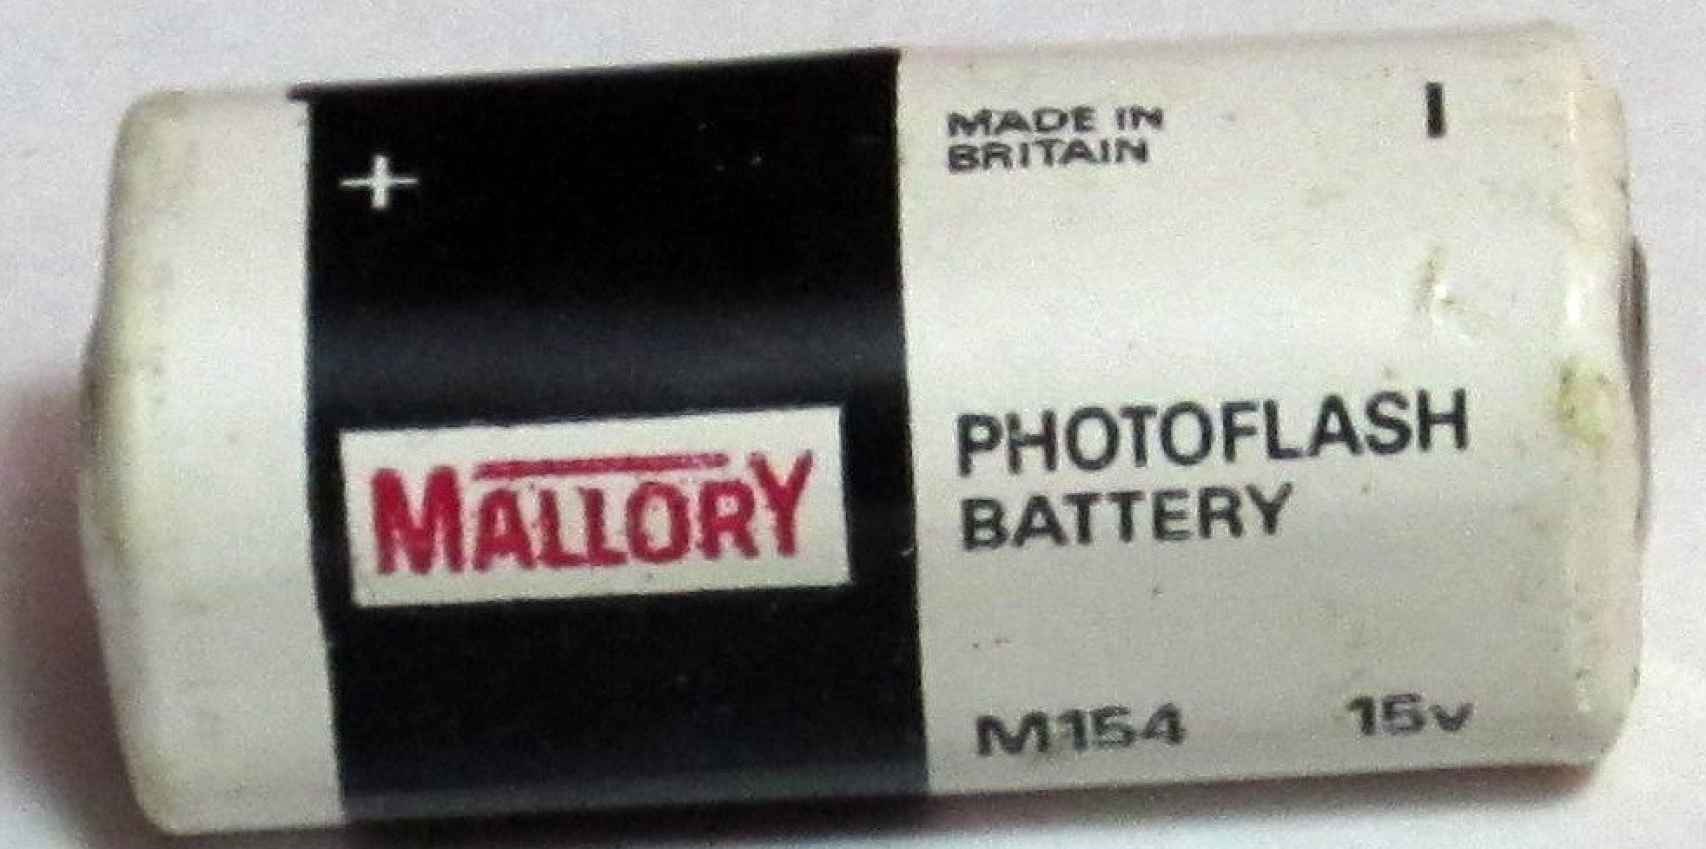 Mallory brand battery.